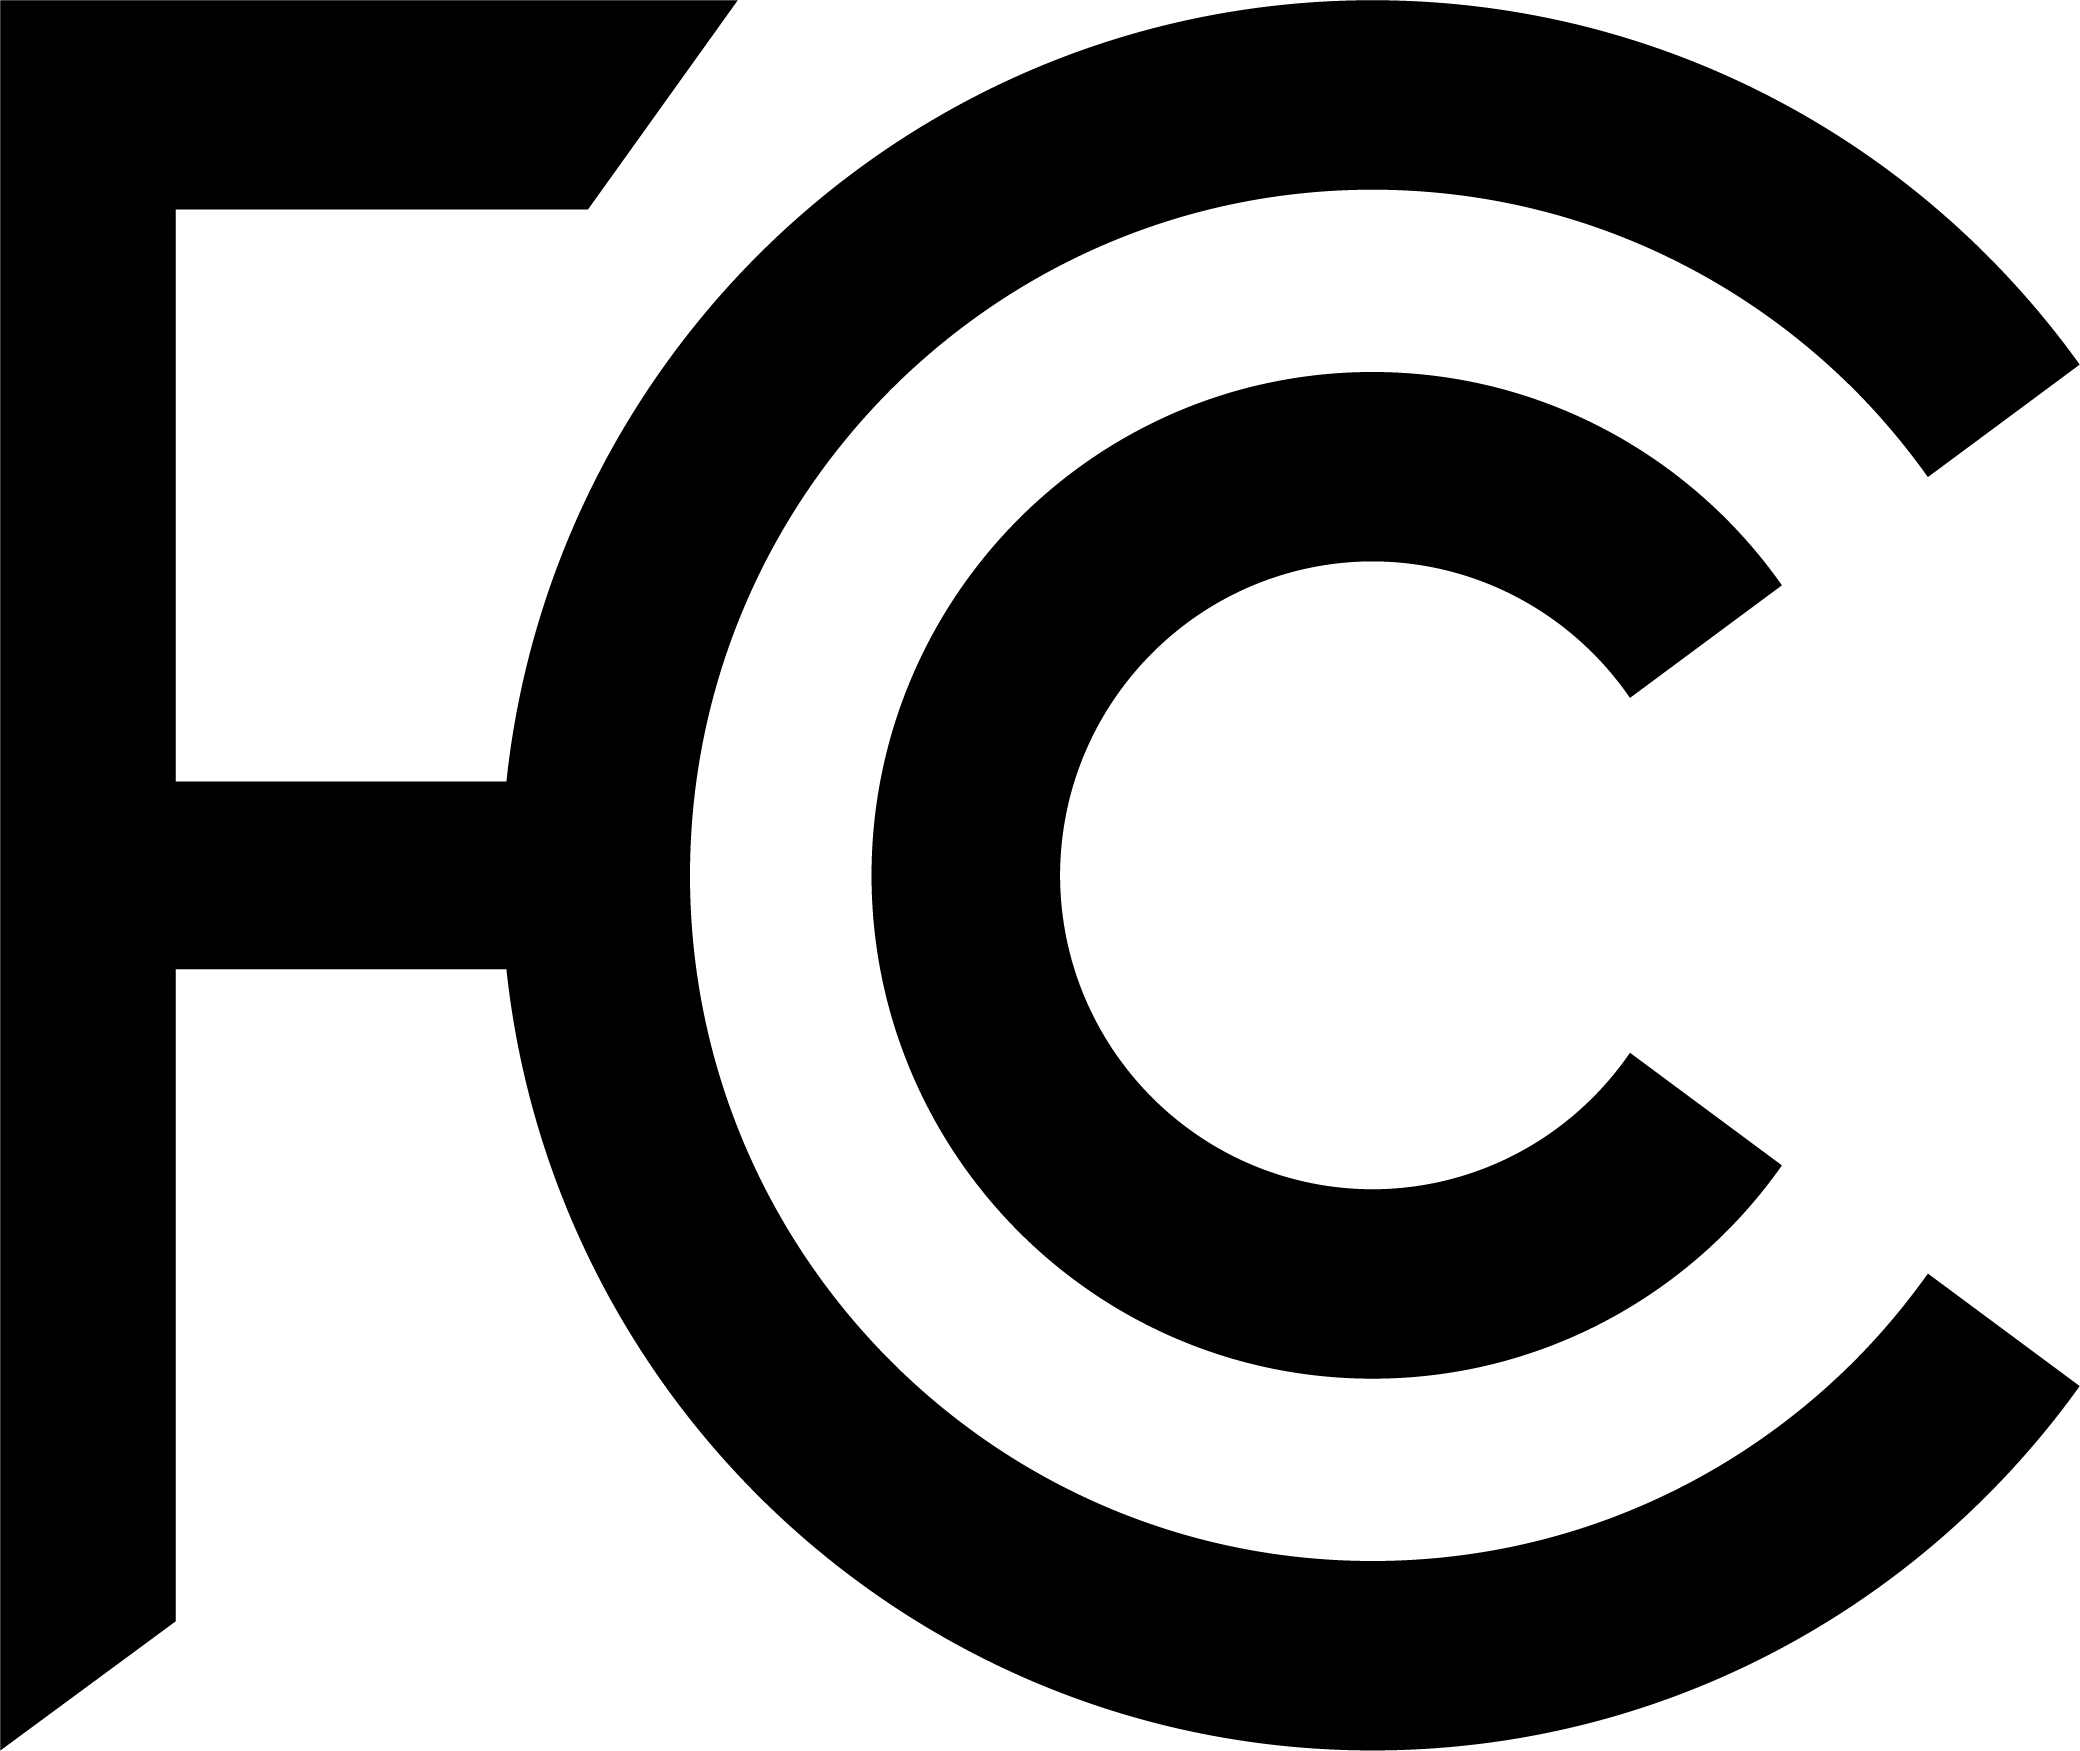 fcc-logo-black-2020.png